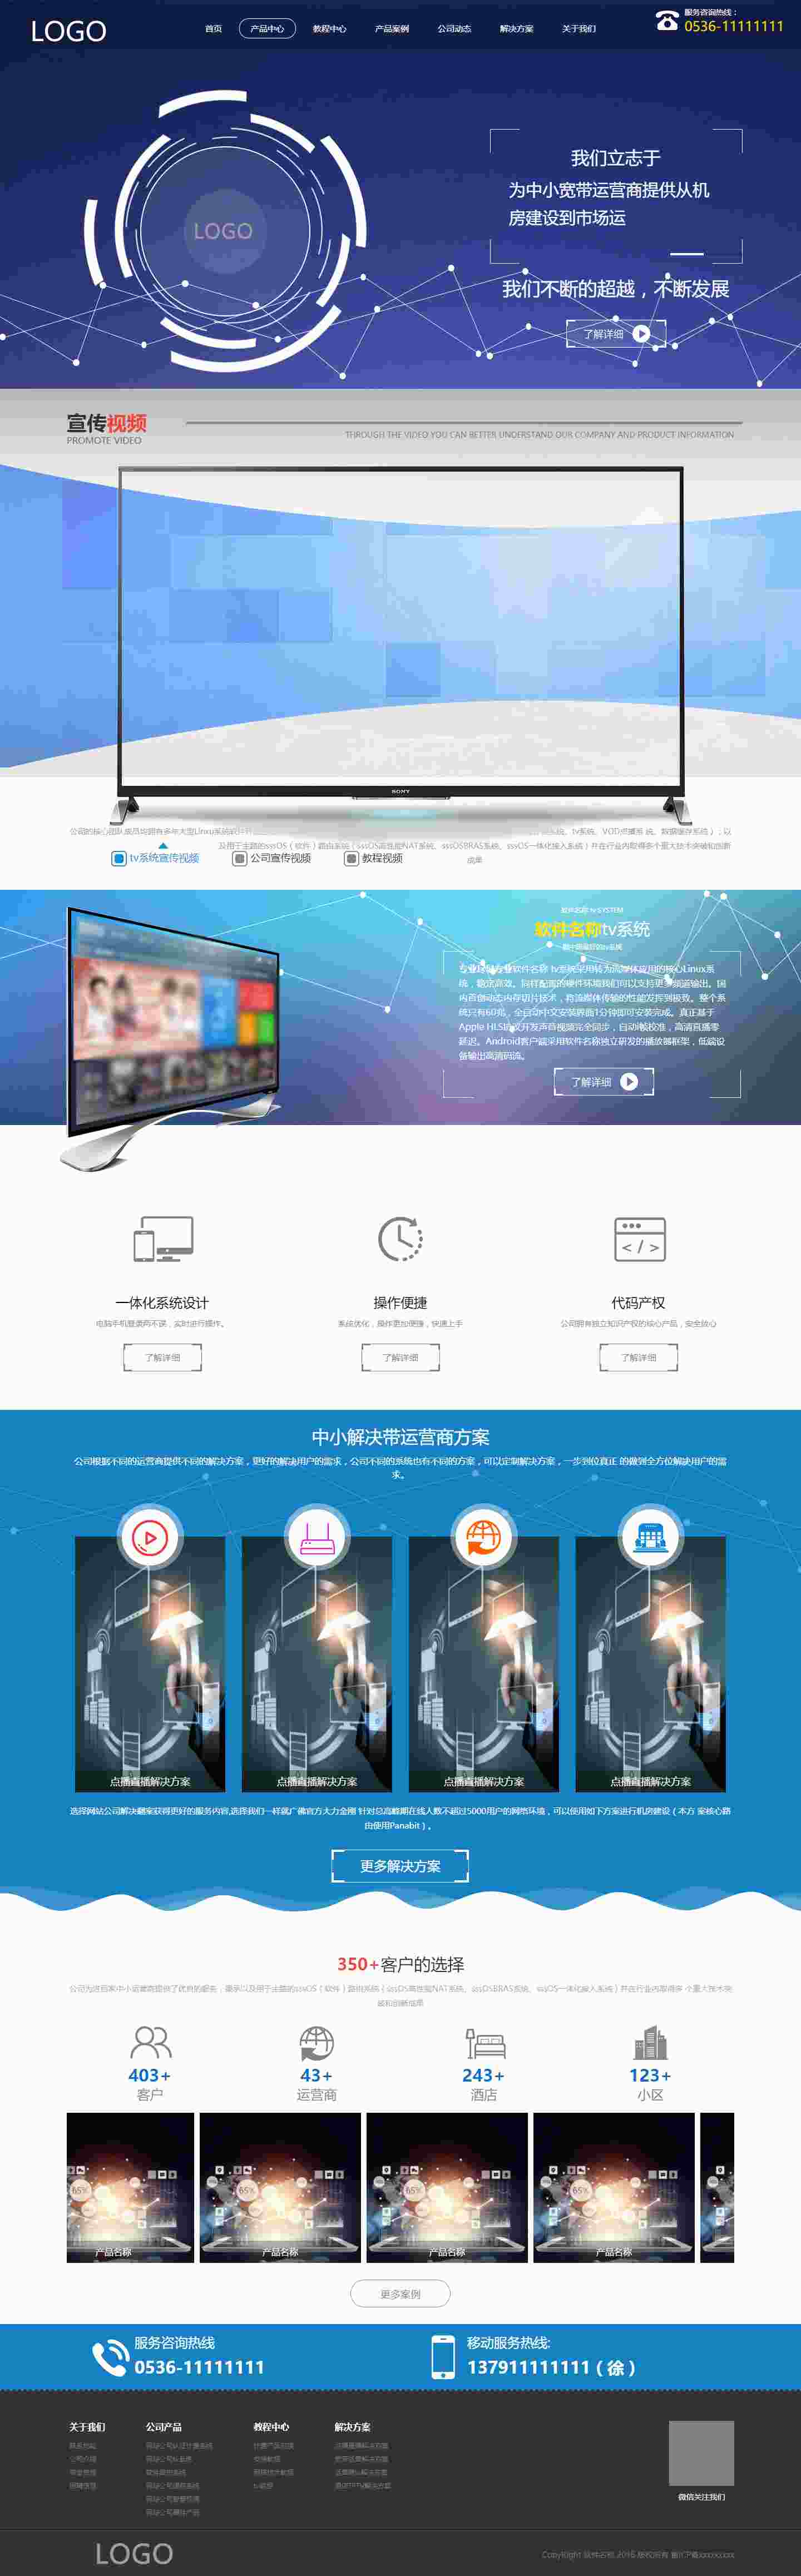 蓝色科技类软件产品直播TV产品网站模版